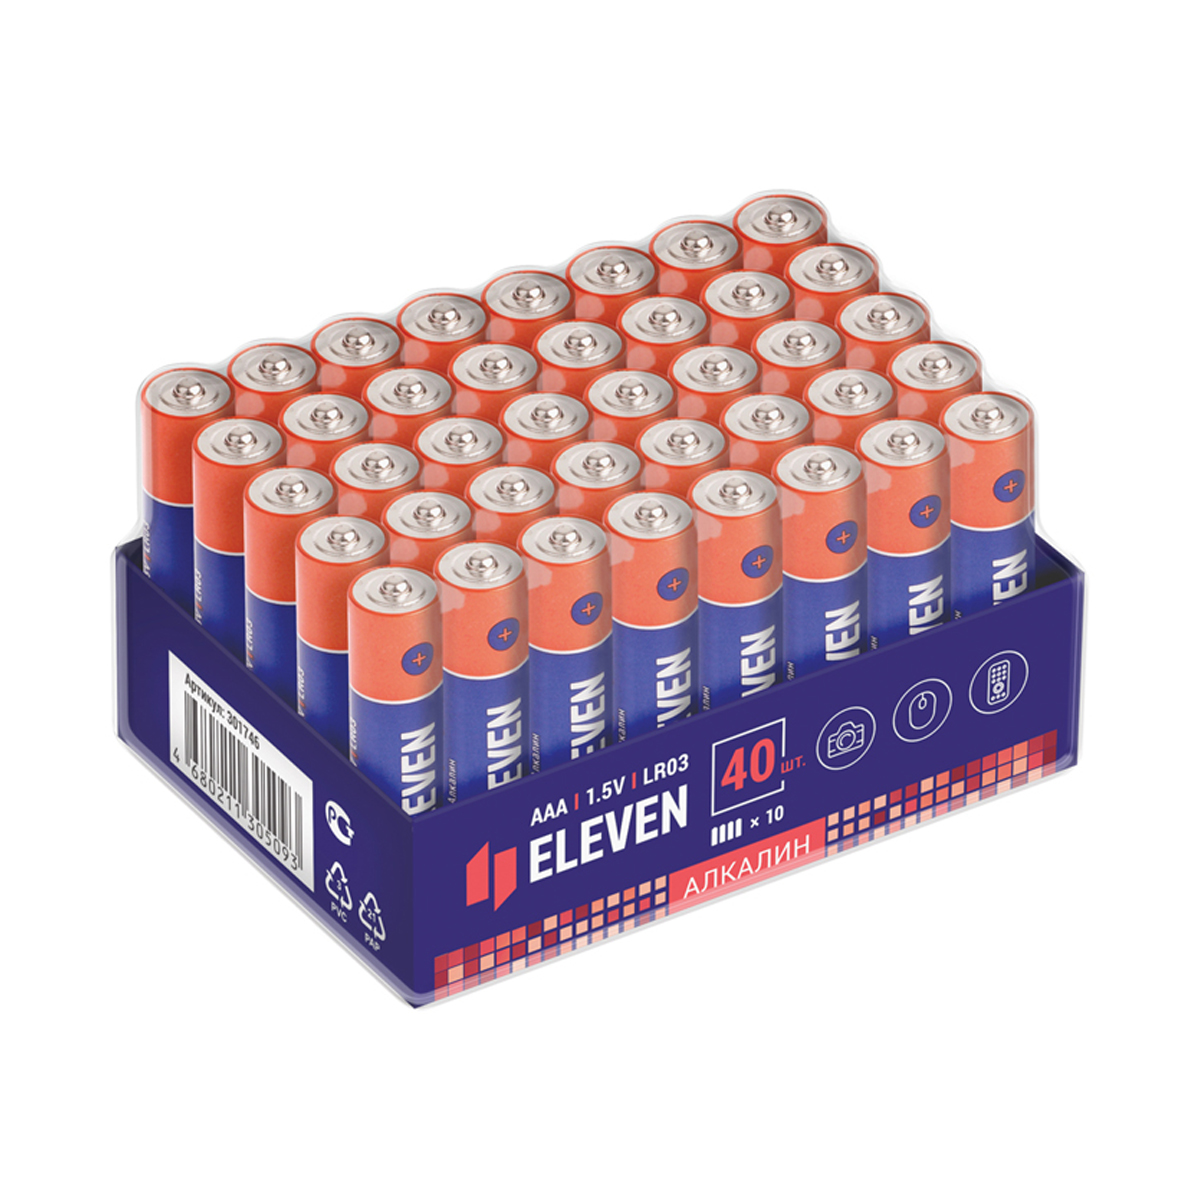 Батарейки Eleven 3А Мизинчиковые AAA (LR03), алкалиновые, 1,5В, 40 шт калькулятор настольный 12 разрядный sdc 888t питание от батарейки